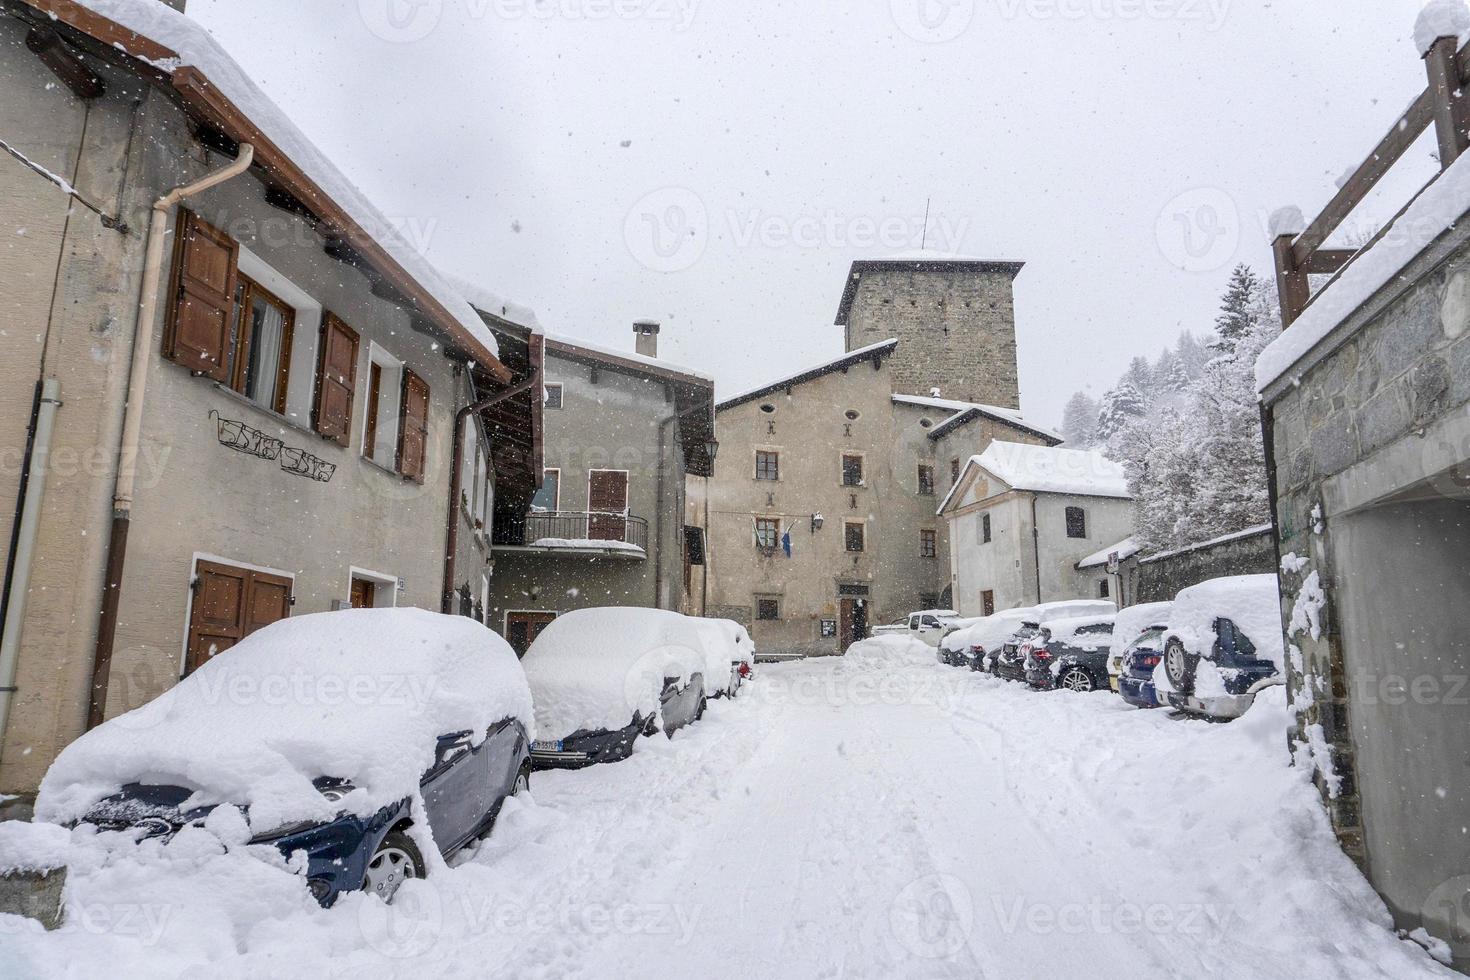 pueblo medieval de bormio valtellina italia bajo la nieve en invierno foto